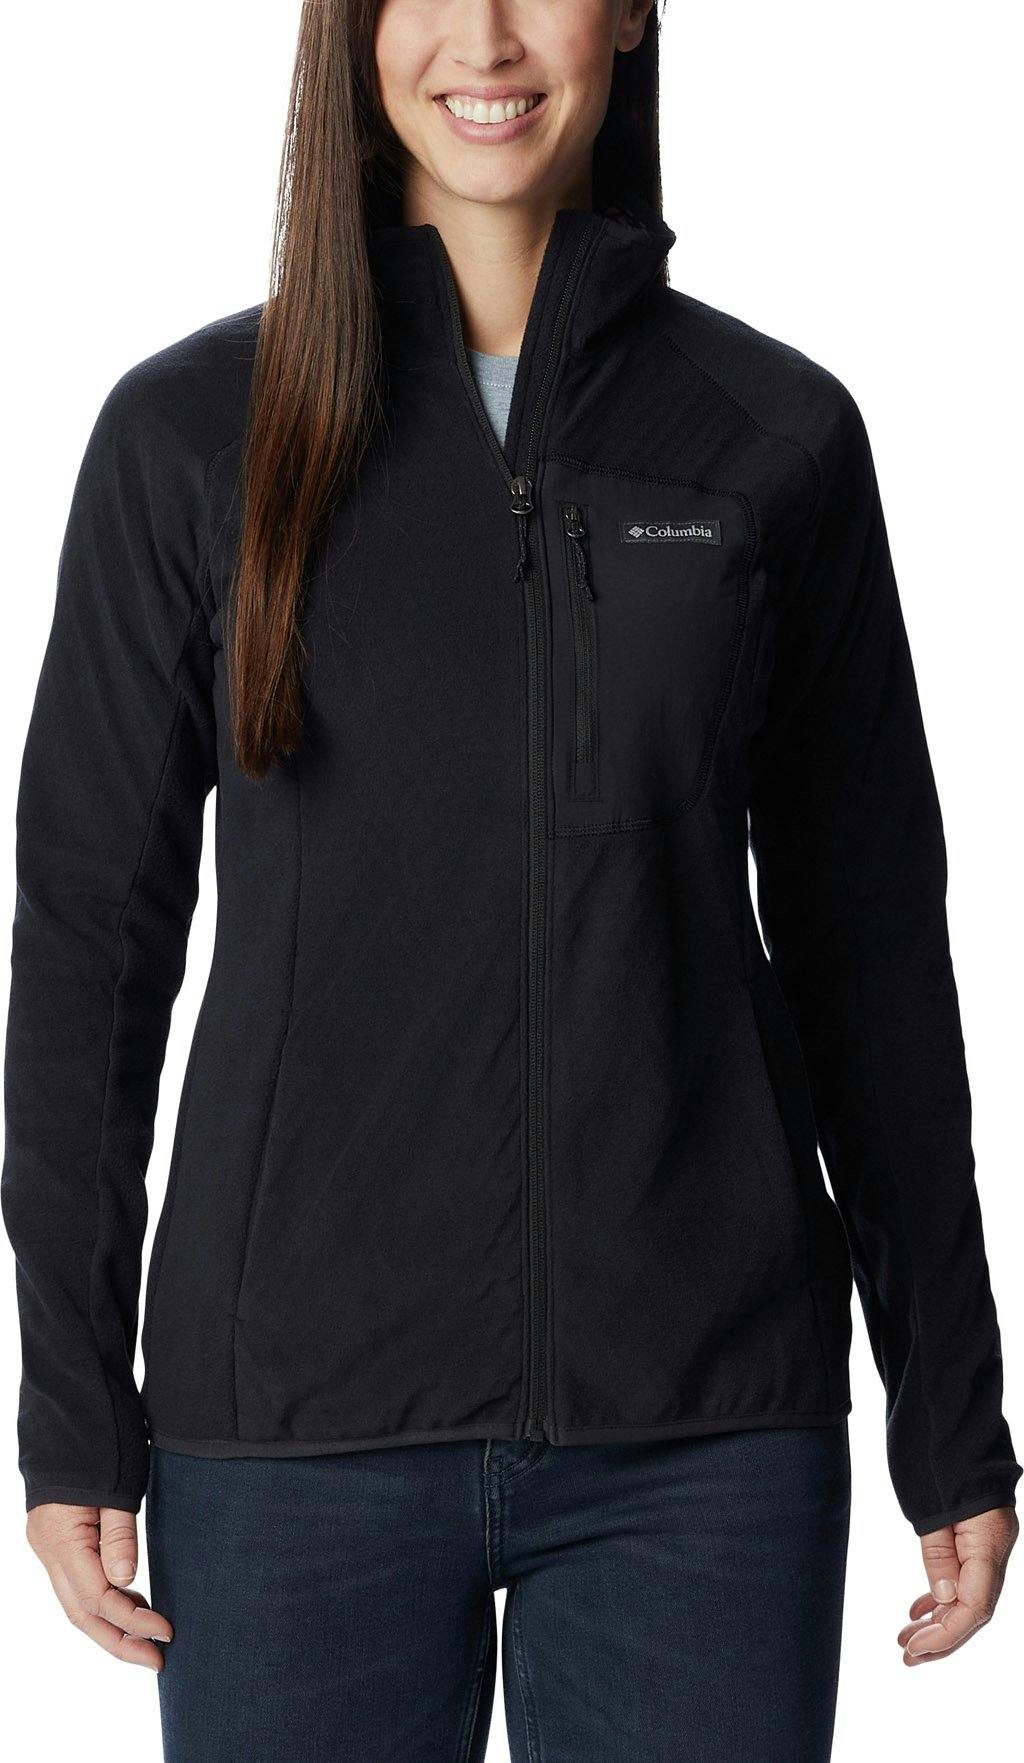 Product image for Outdoor Tracks Full Zip Fleece Jacket - Women's